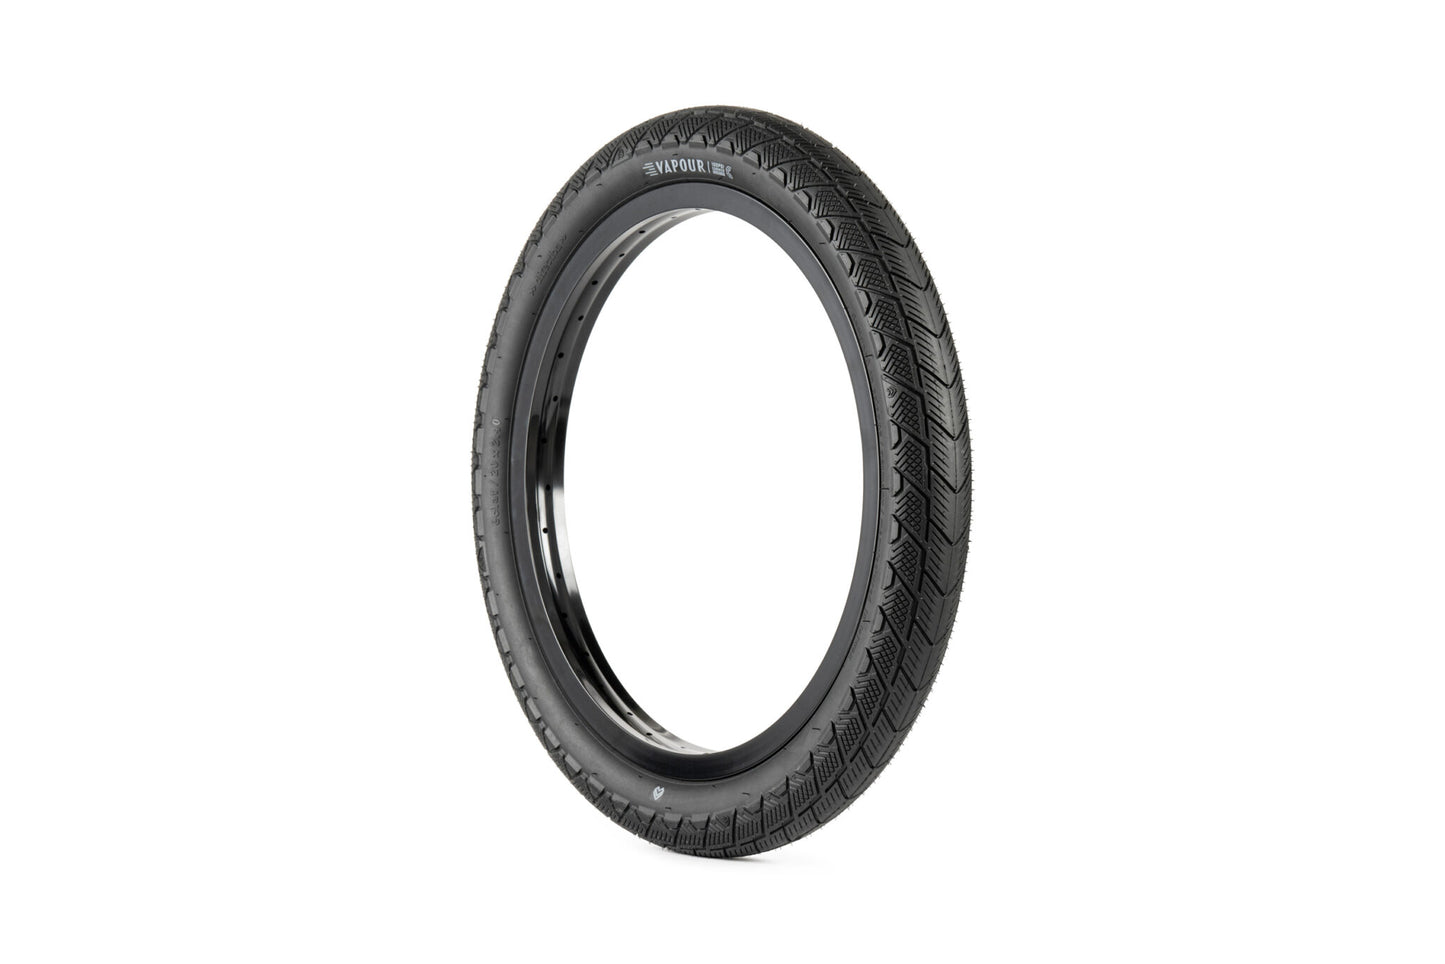 Eclat Vapour bmx tire